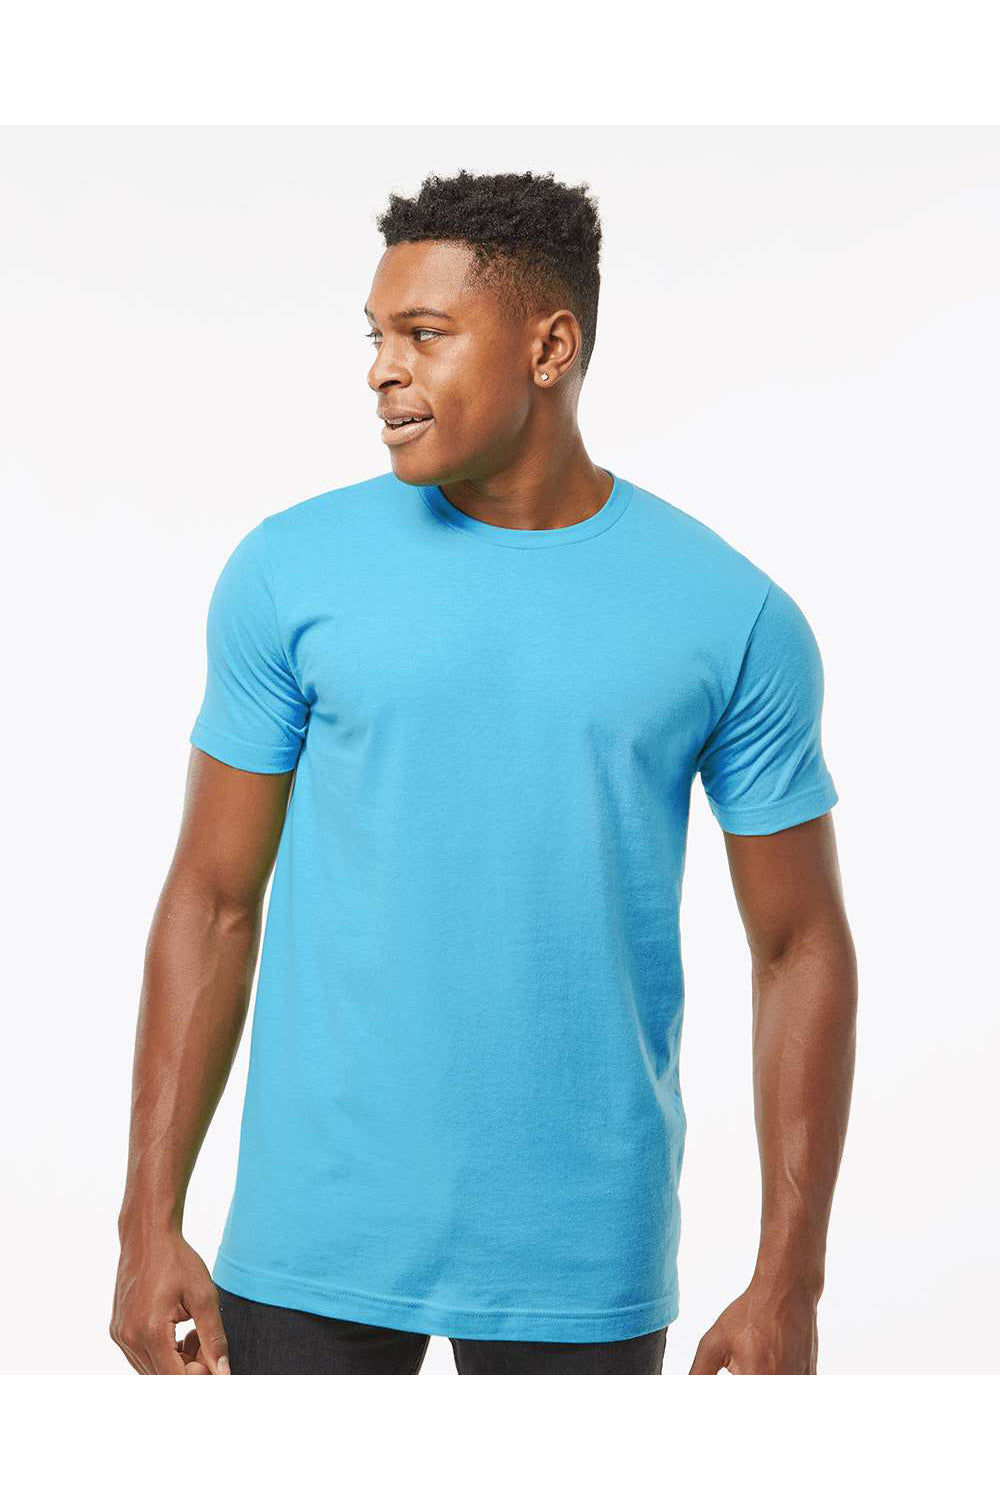 Tultex 202 Mens Fine Jersey Short Sleeve Crewneck T-Shirt Aqua Blue Model Front